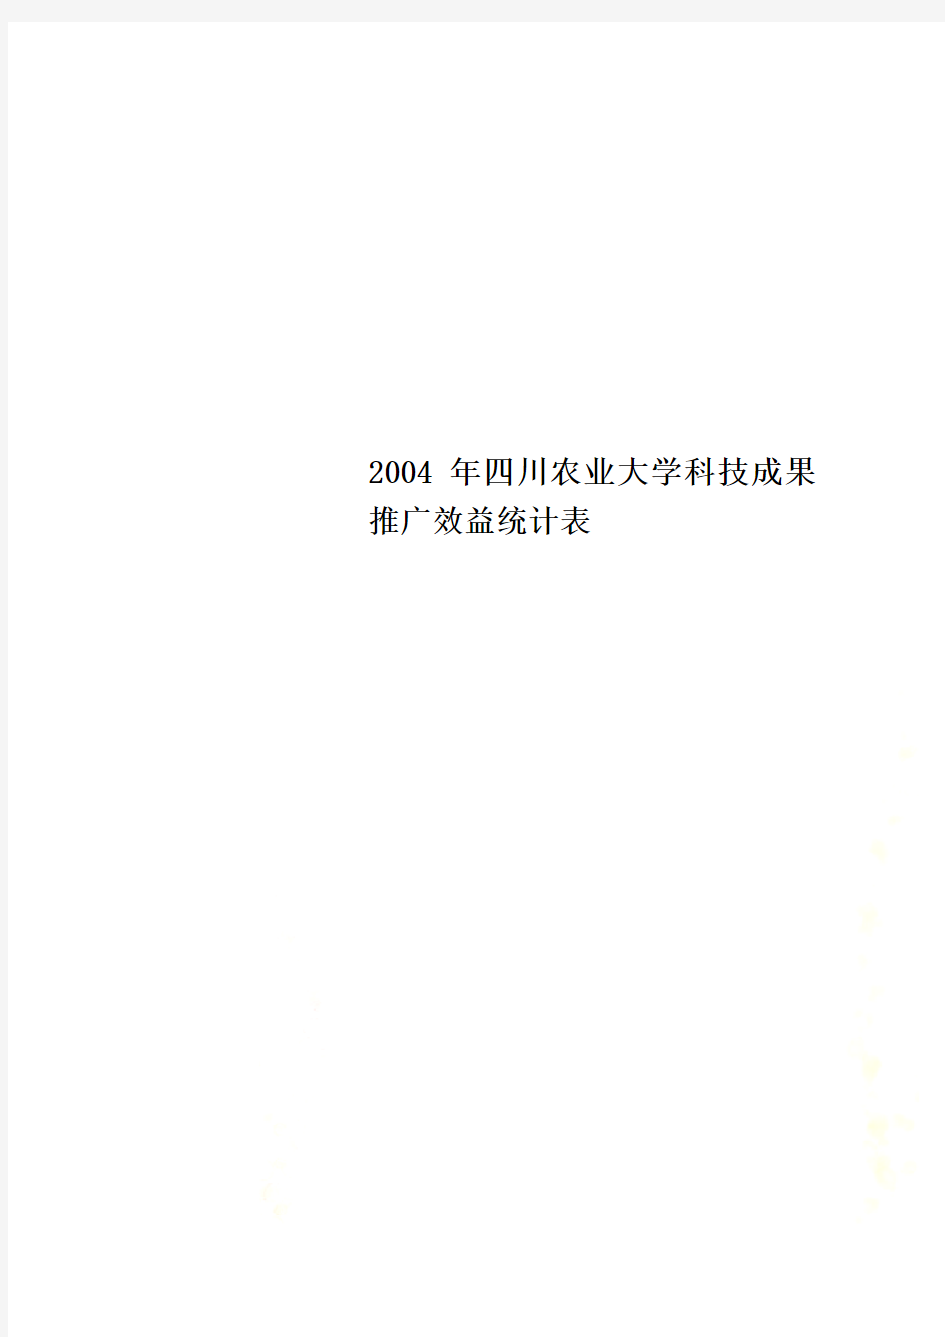 2004年四川农业大学科技成果推广效益统计表